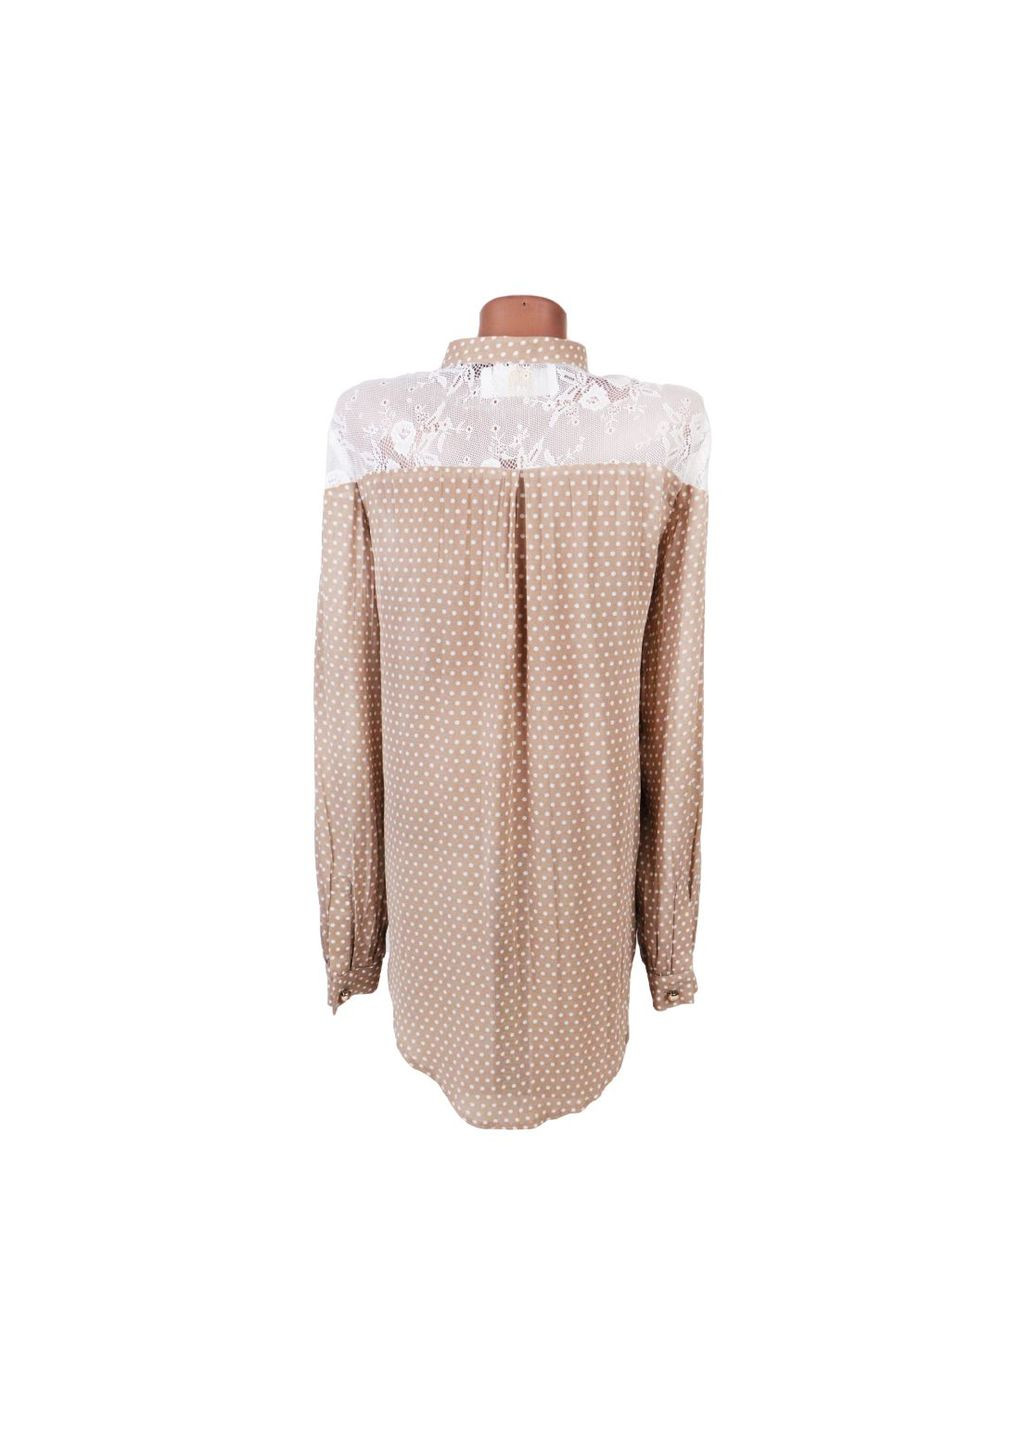 Комбинированная демисезонная женская прозрачная блуза в горошек комбинированный m Rimit